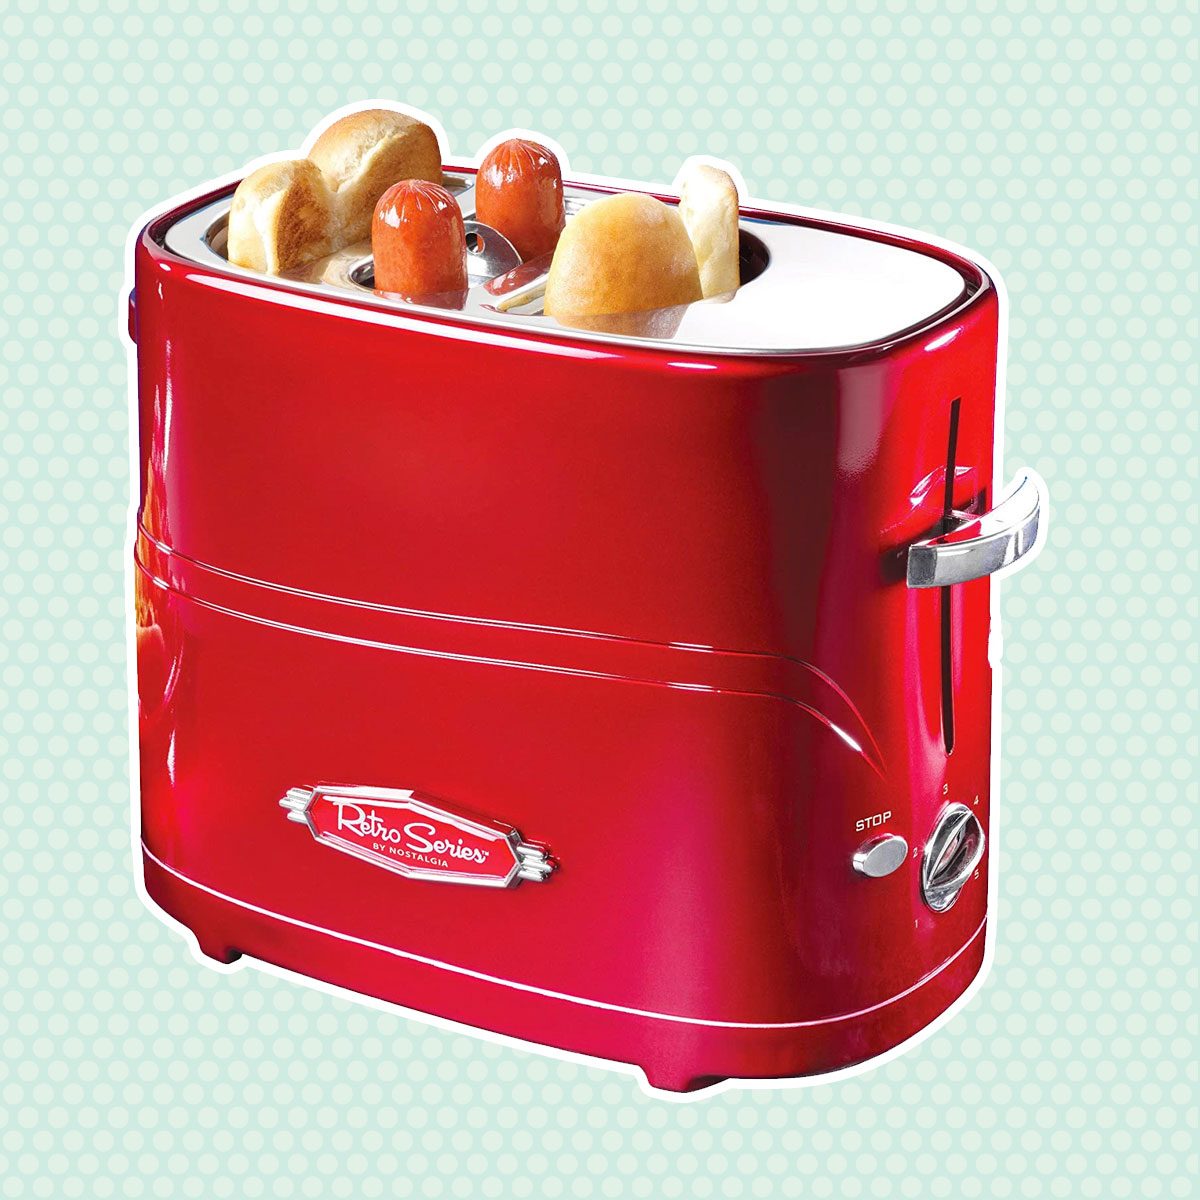 https://www.tasteofhome.com/wp-content/uploads/2021/03/hot-dog-cooker.jpg?fit=696%2C696